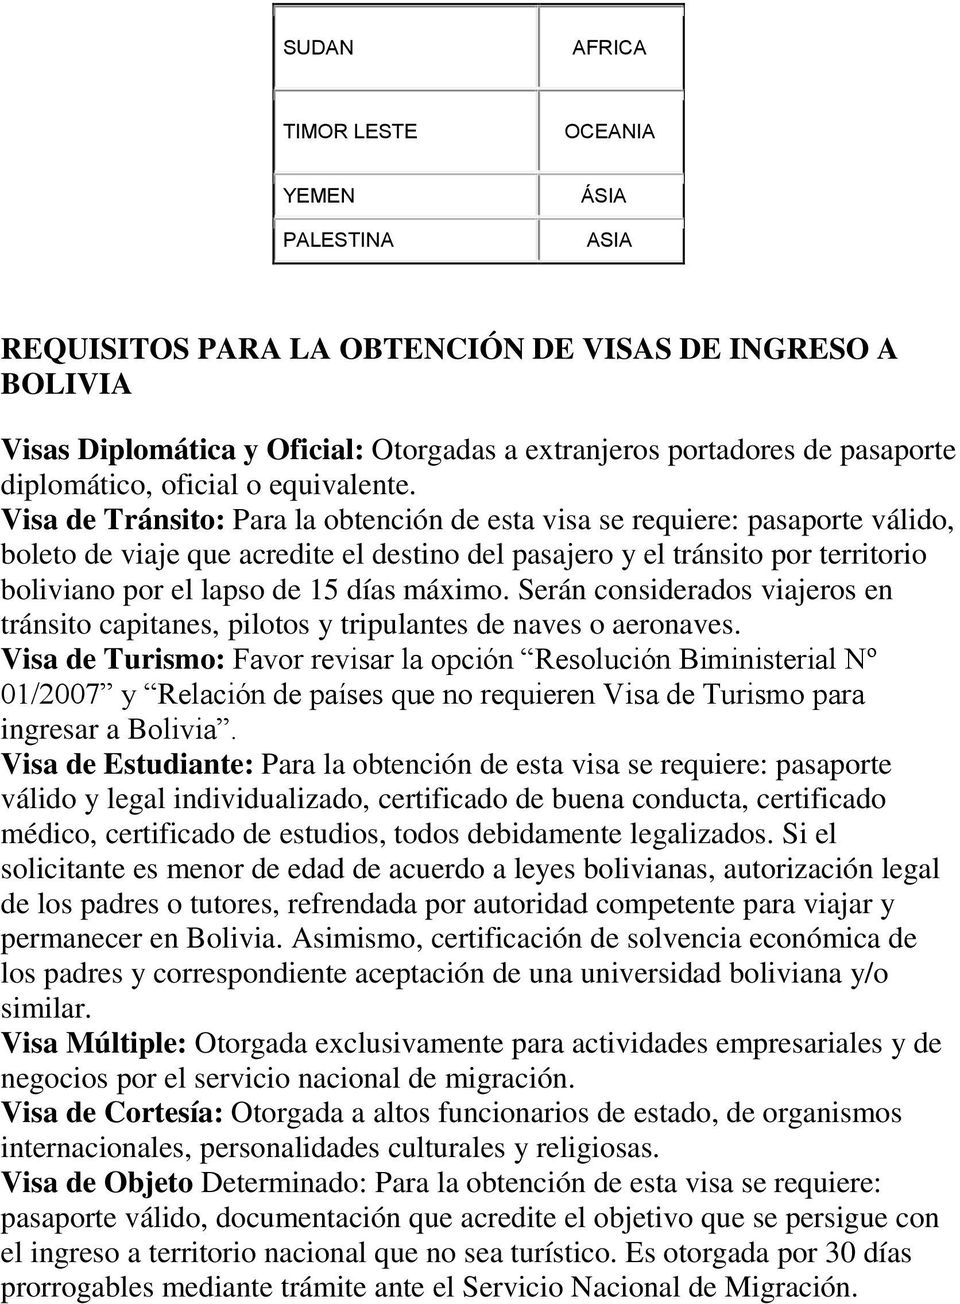 Visa de Tránsito: Para la obtención de esta visa se requiere: pasaporte válido, boleto de viaje que acredite el destino del pasajero y el tránsito por territorio boliviano por el lapso de 15 días